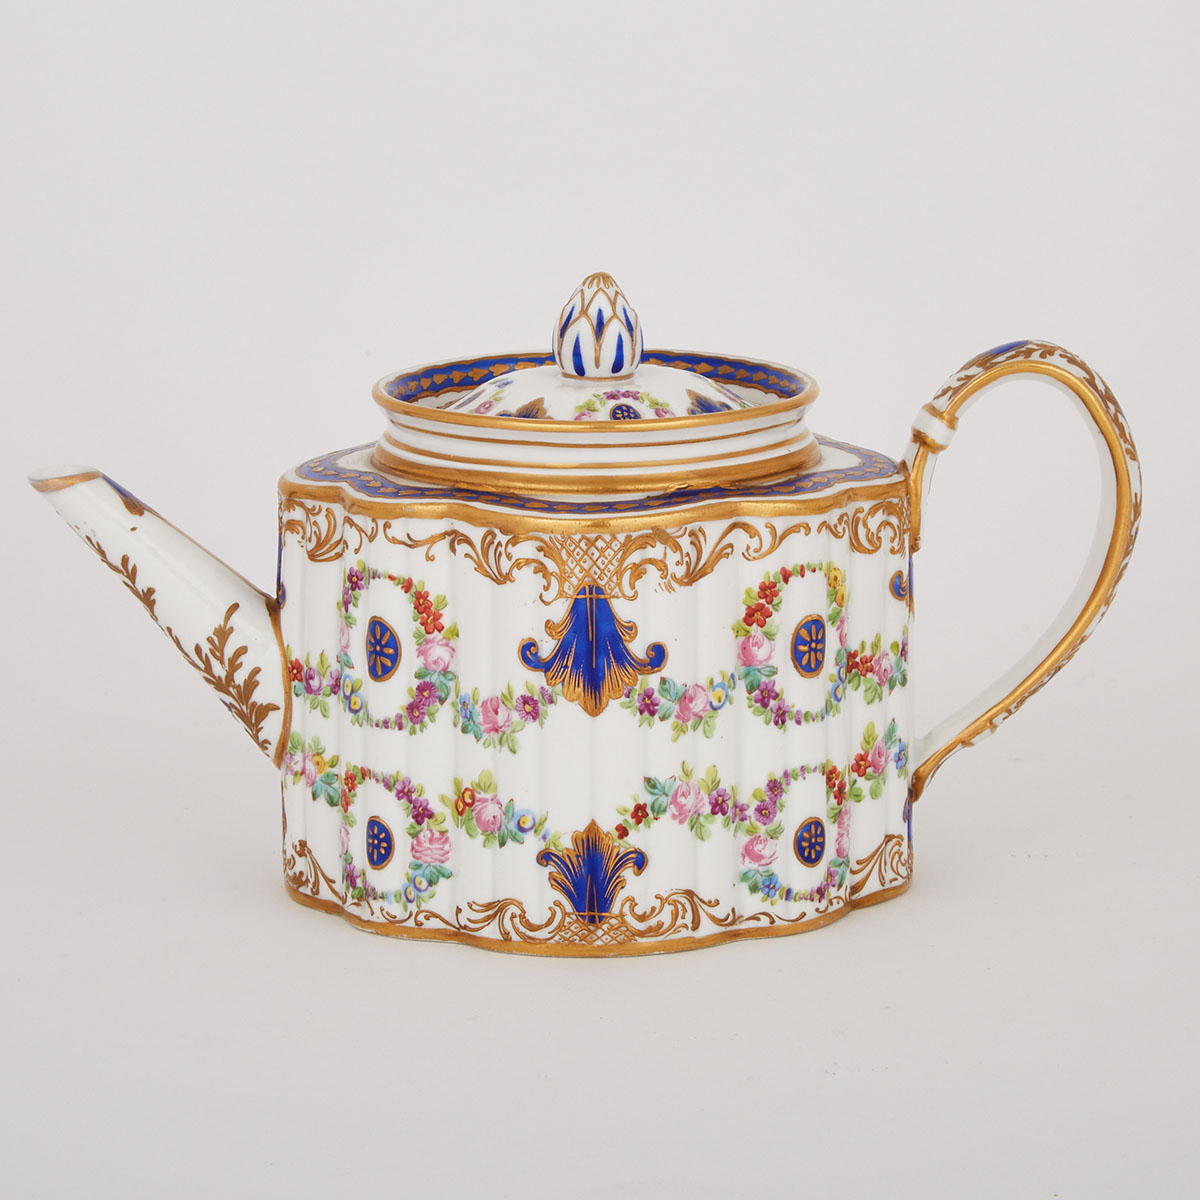 ‘Sèvres’ Teapot, late 19th century